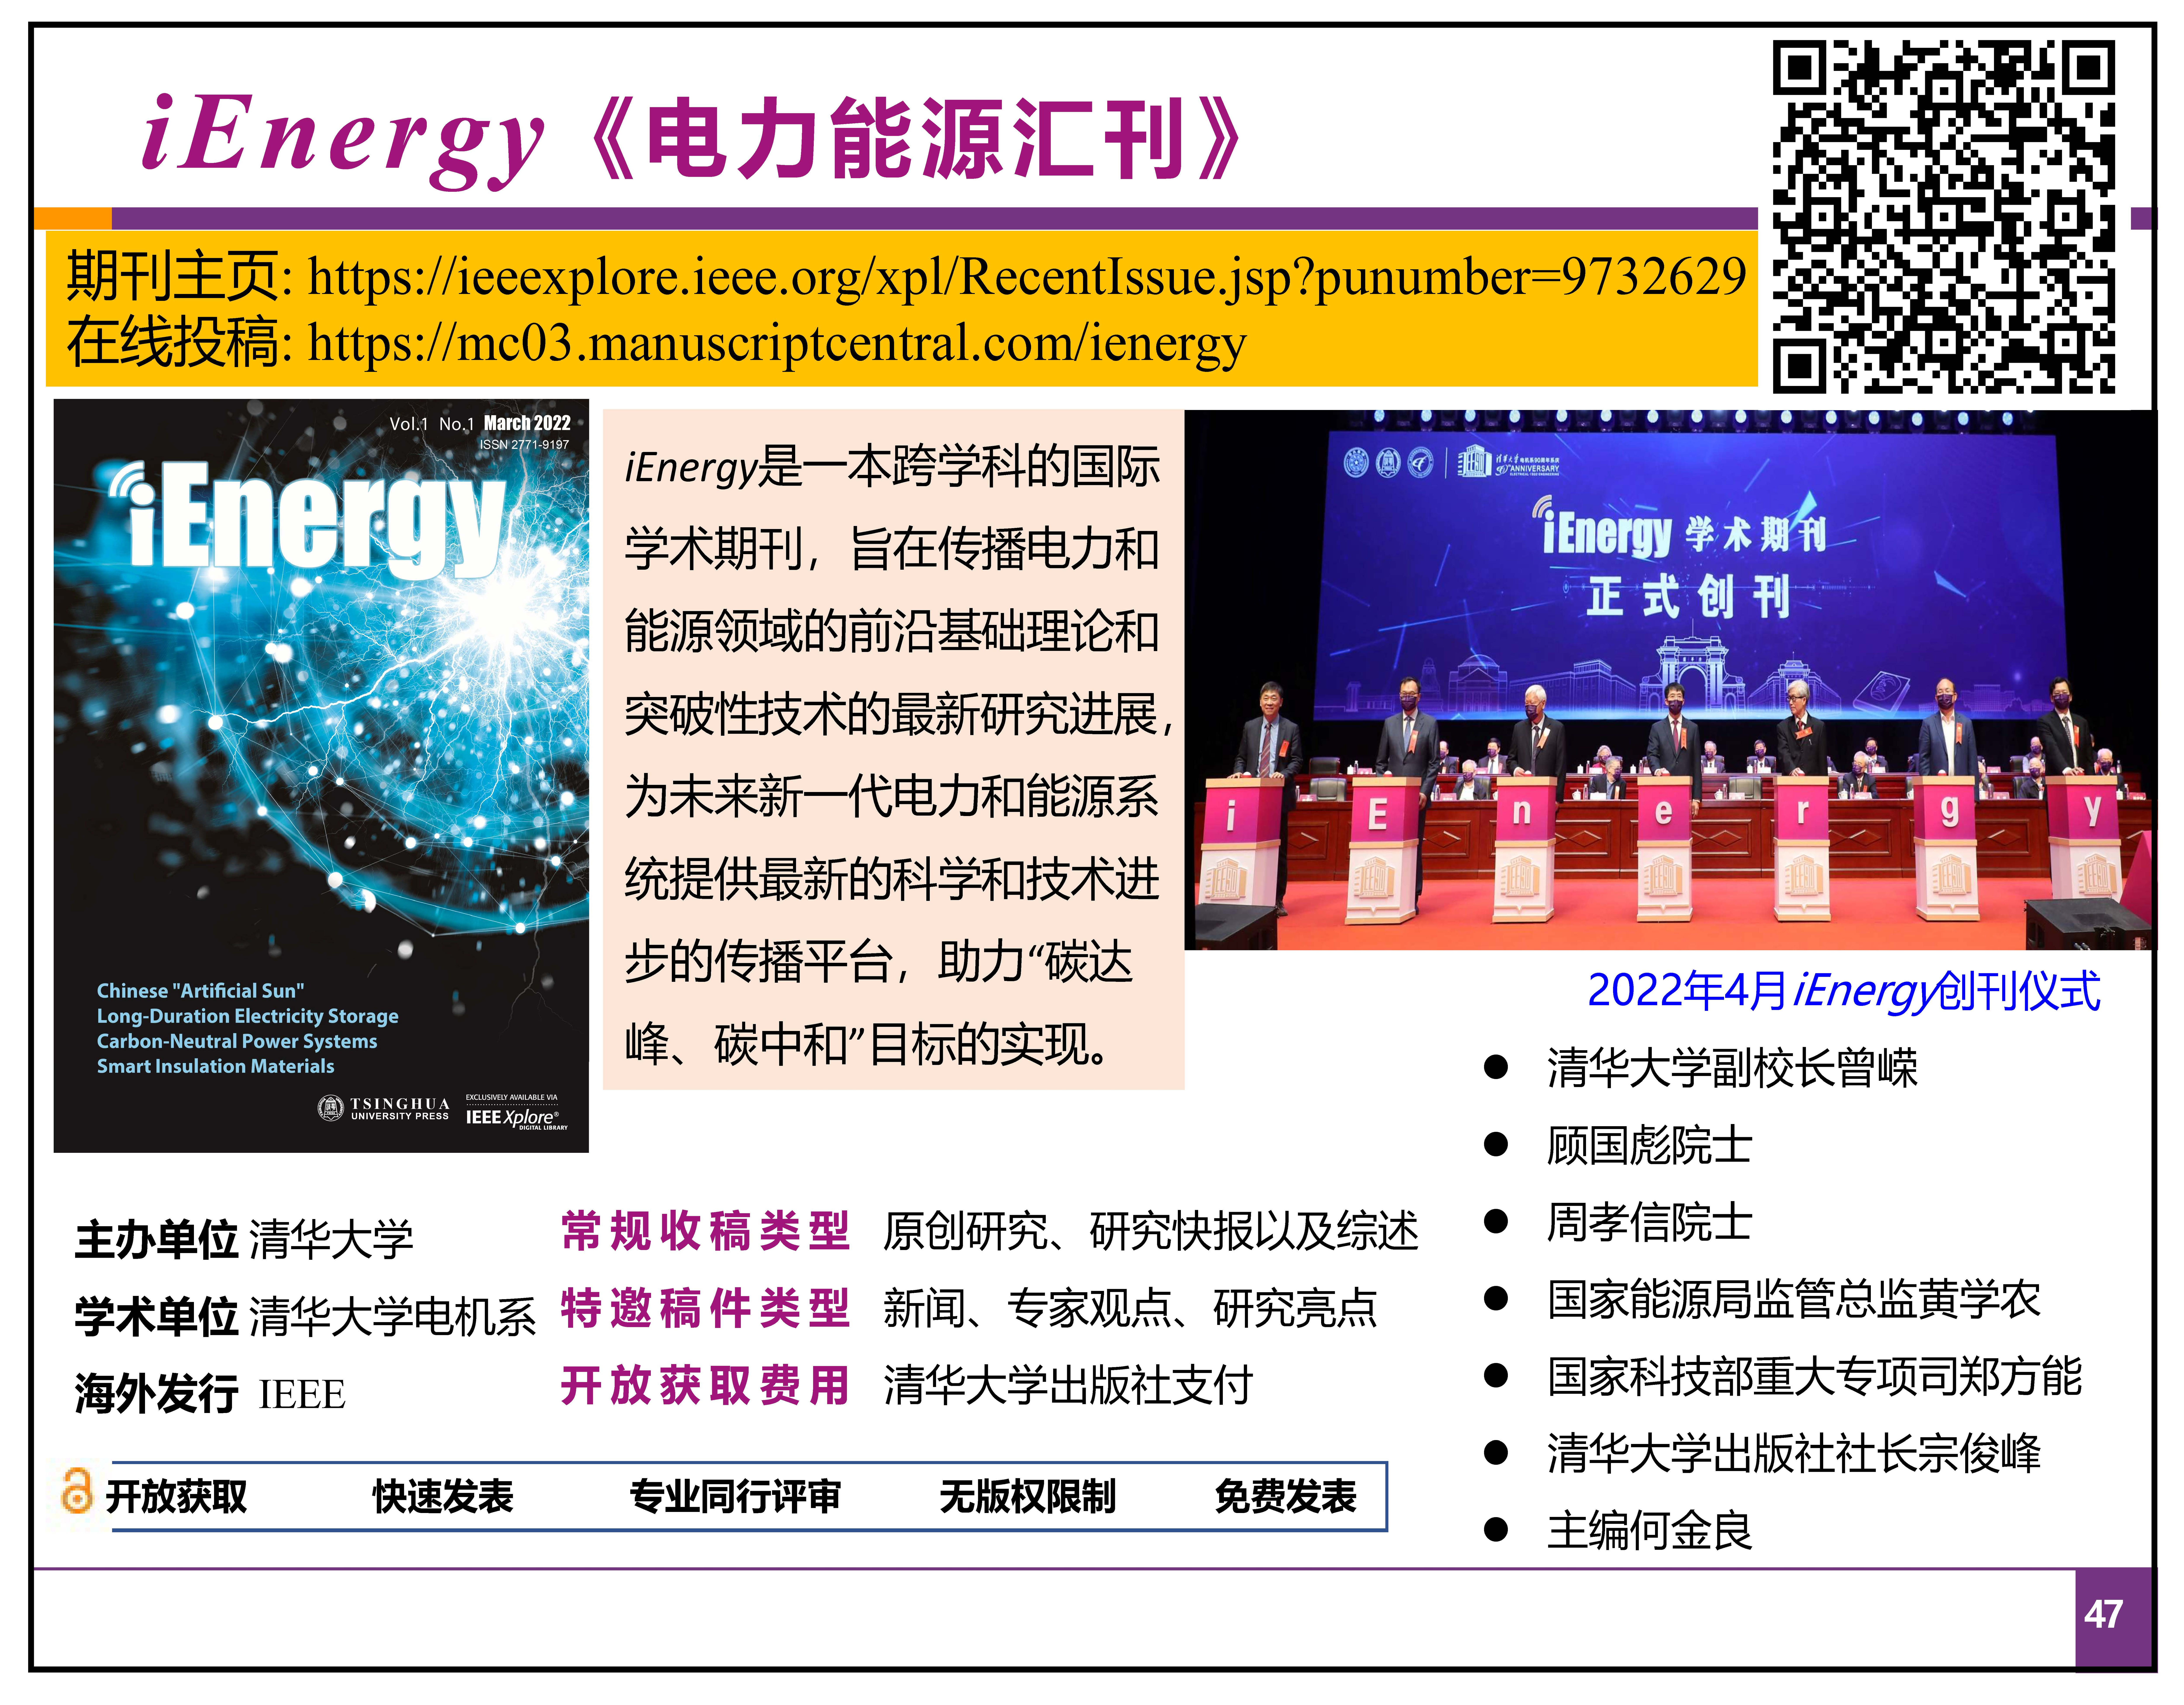 新型电力系统之“碳路”-中国能源研究会-康重庆(拆页2)_页面_47.jpg